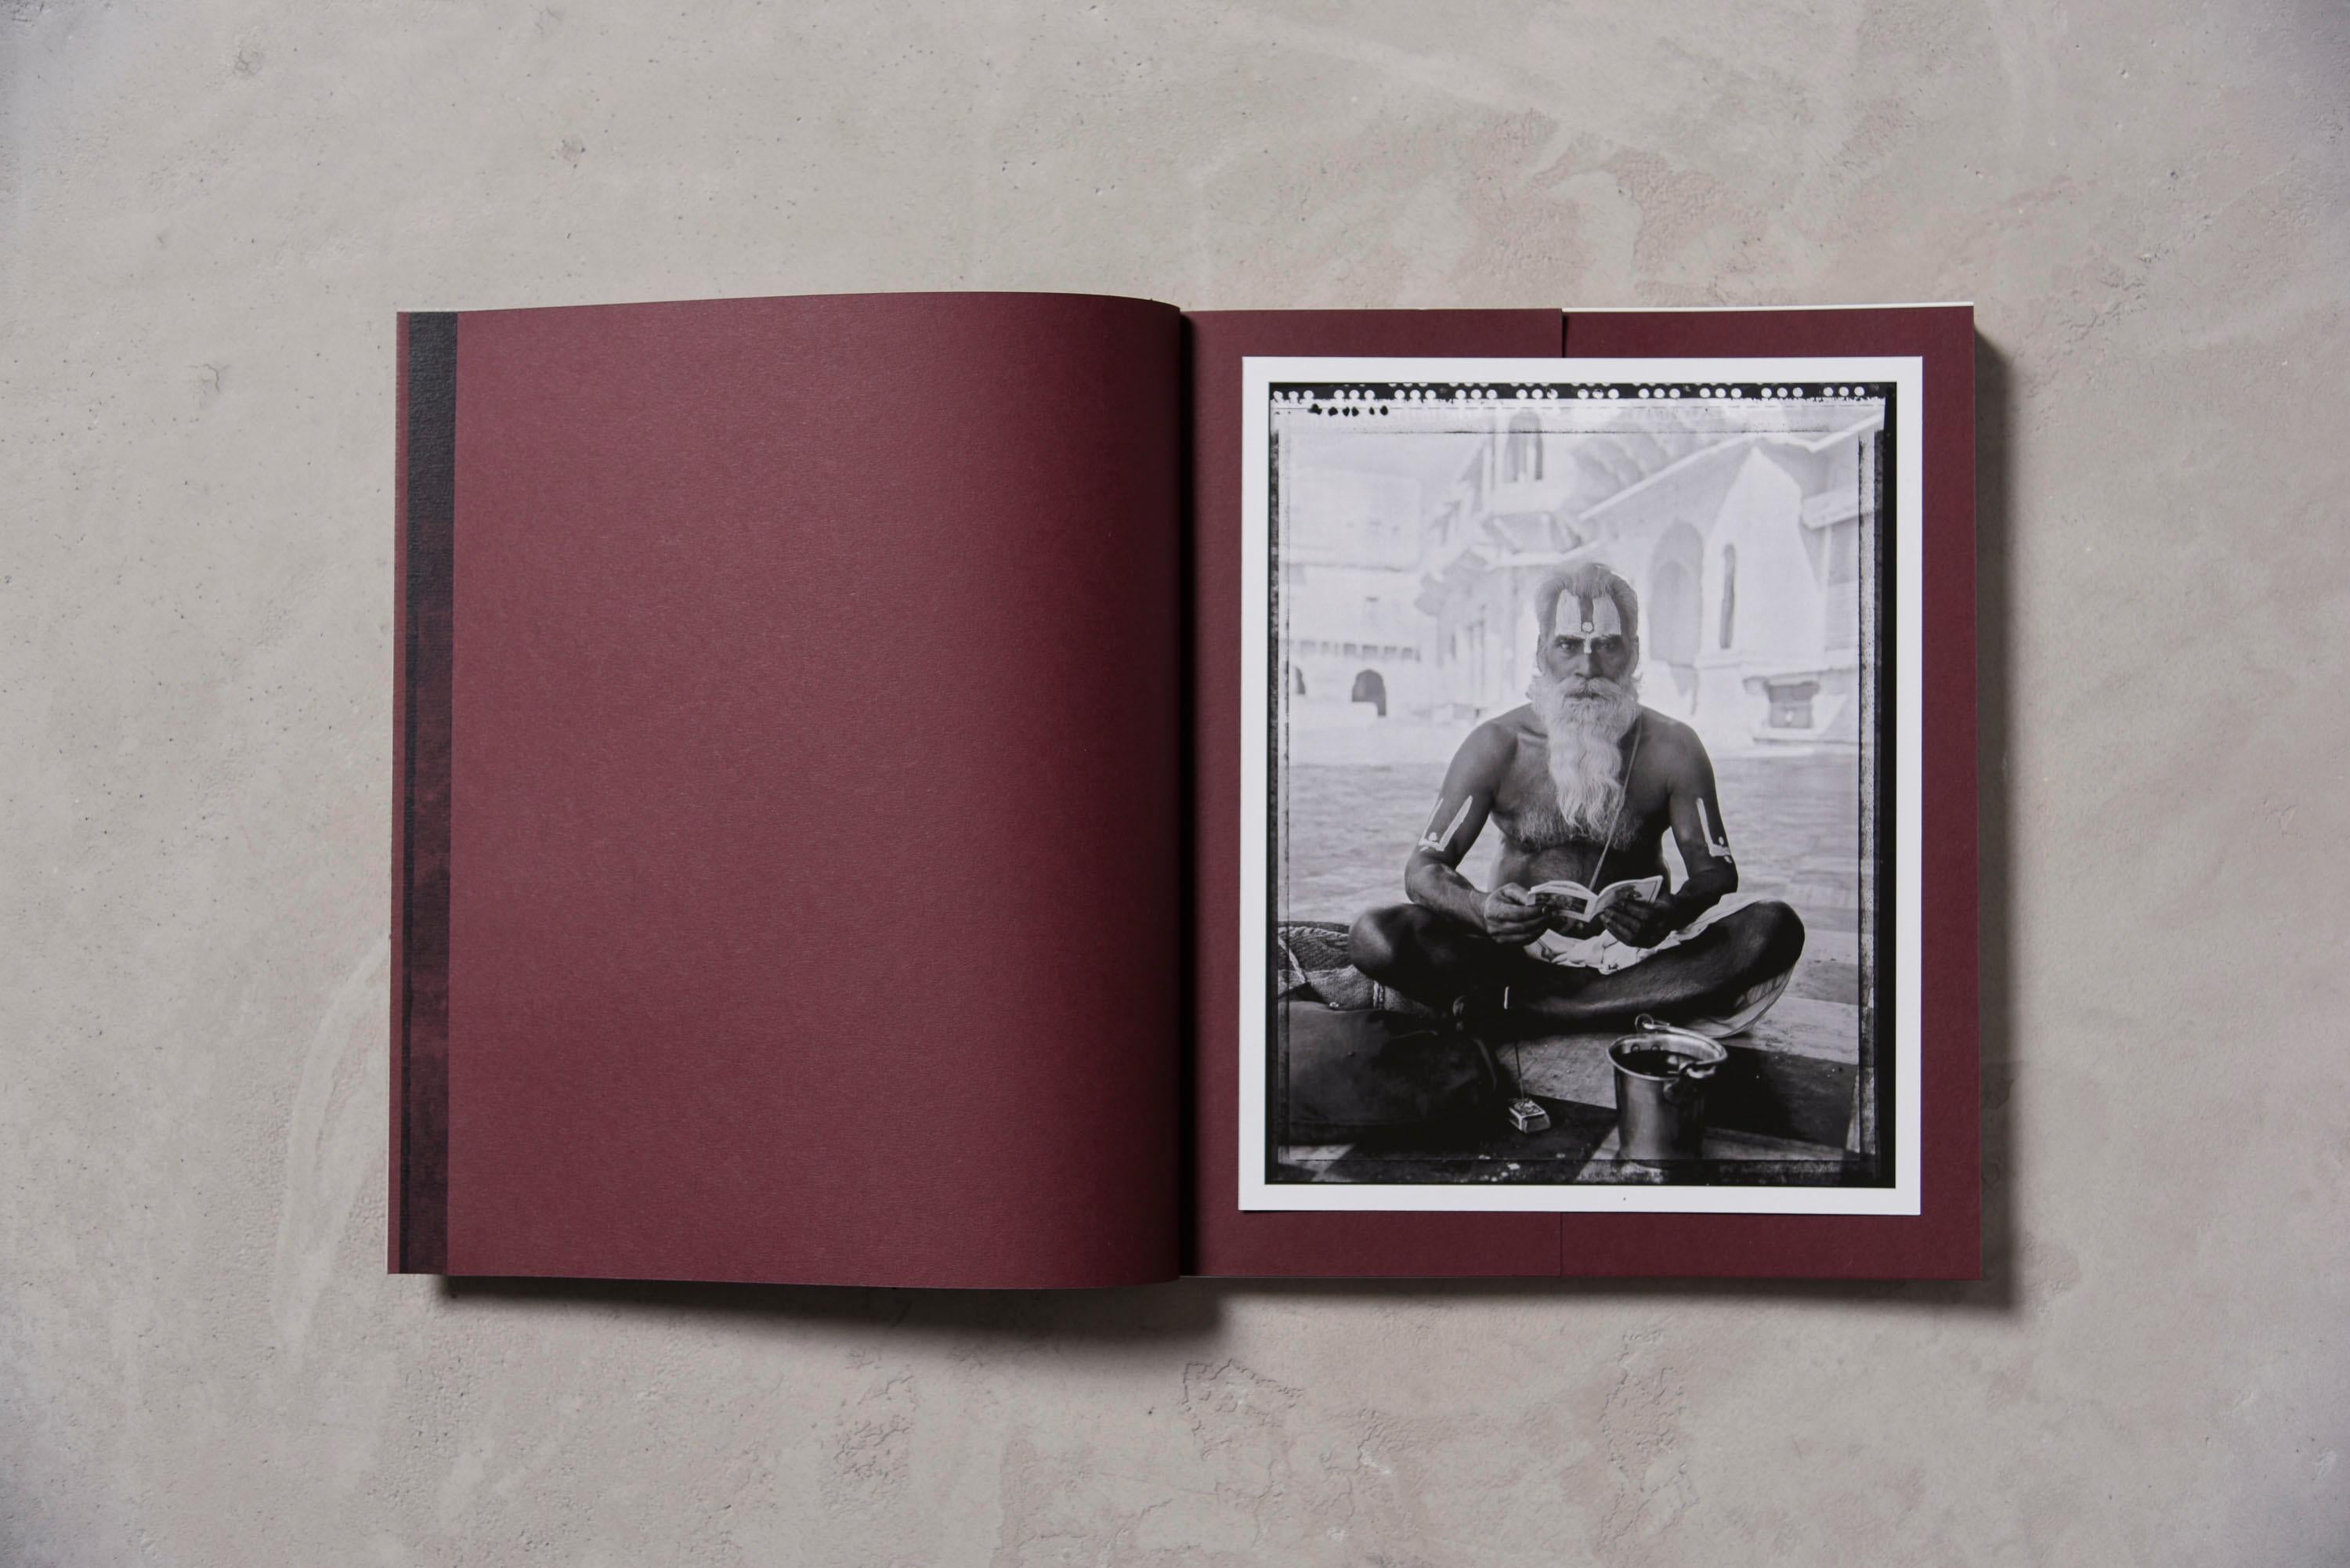 Indische Stillleben – Fotobuch in limitierter Auflage  (Grau), Black and White Photograph, von Carlo Bevilacqua